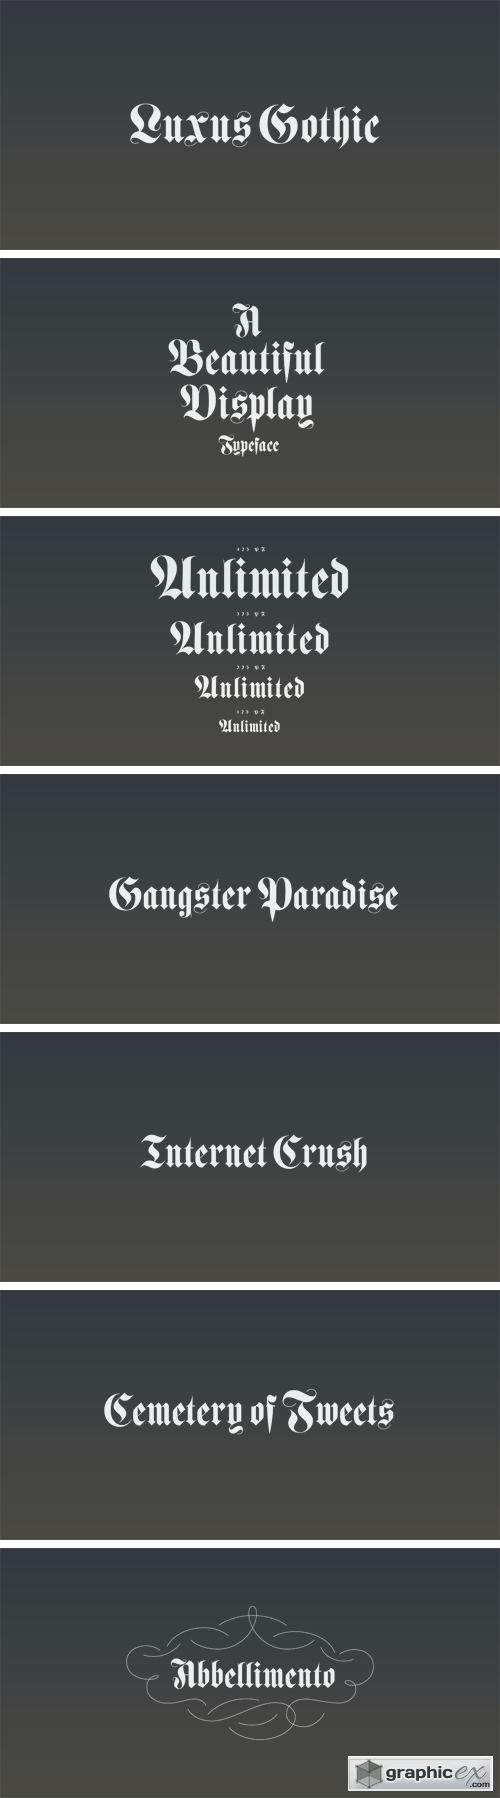 Luxus Gothic Typeface